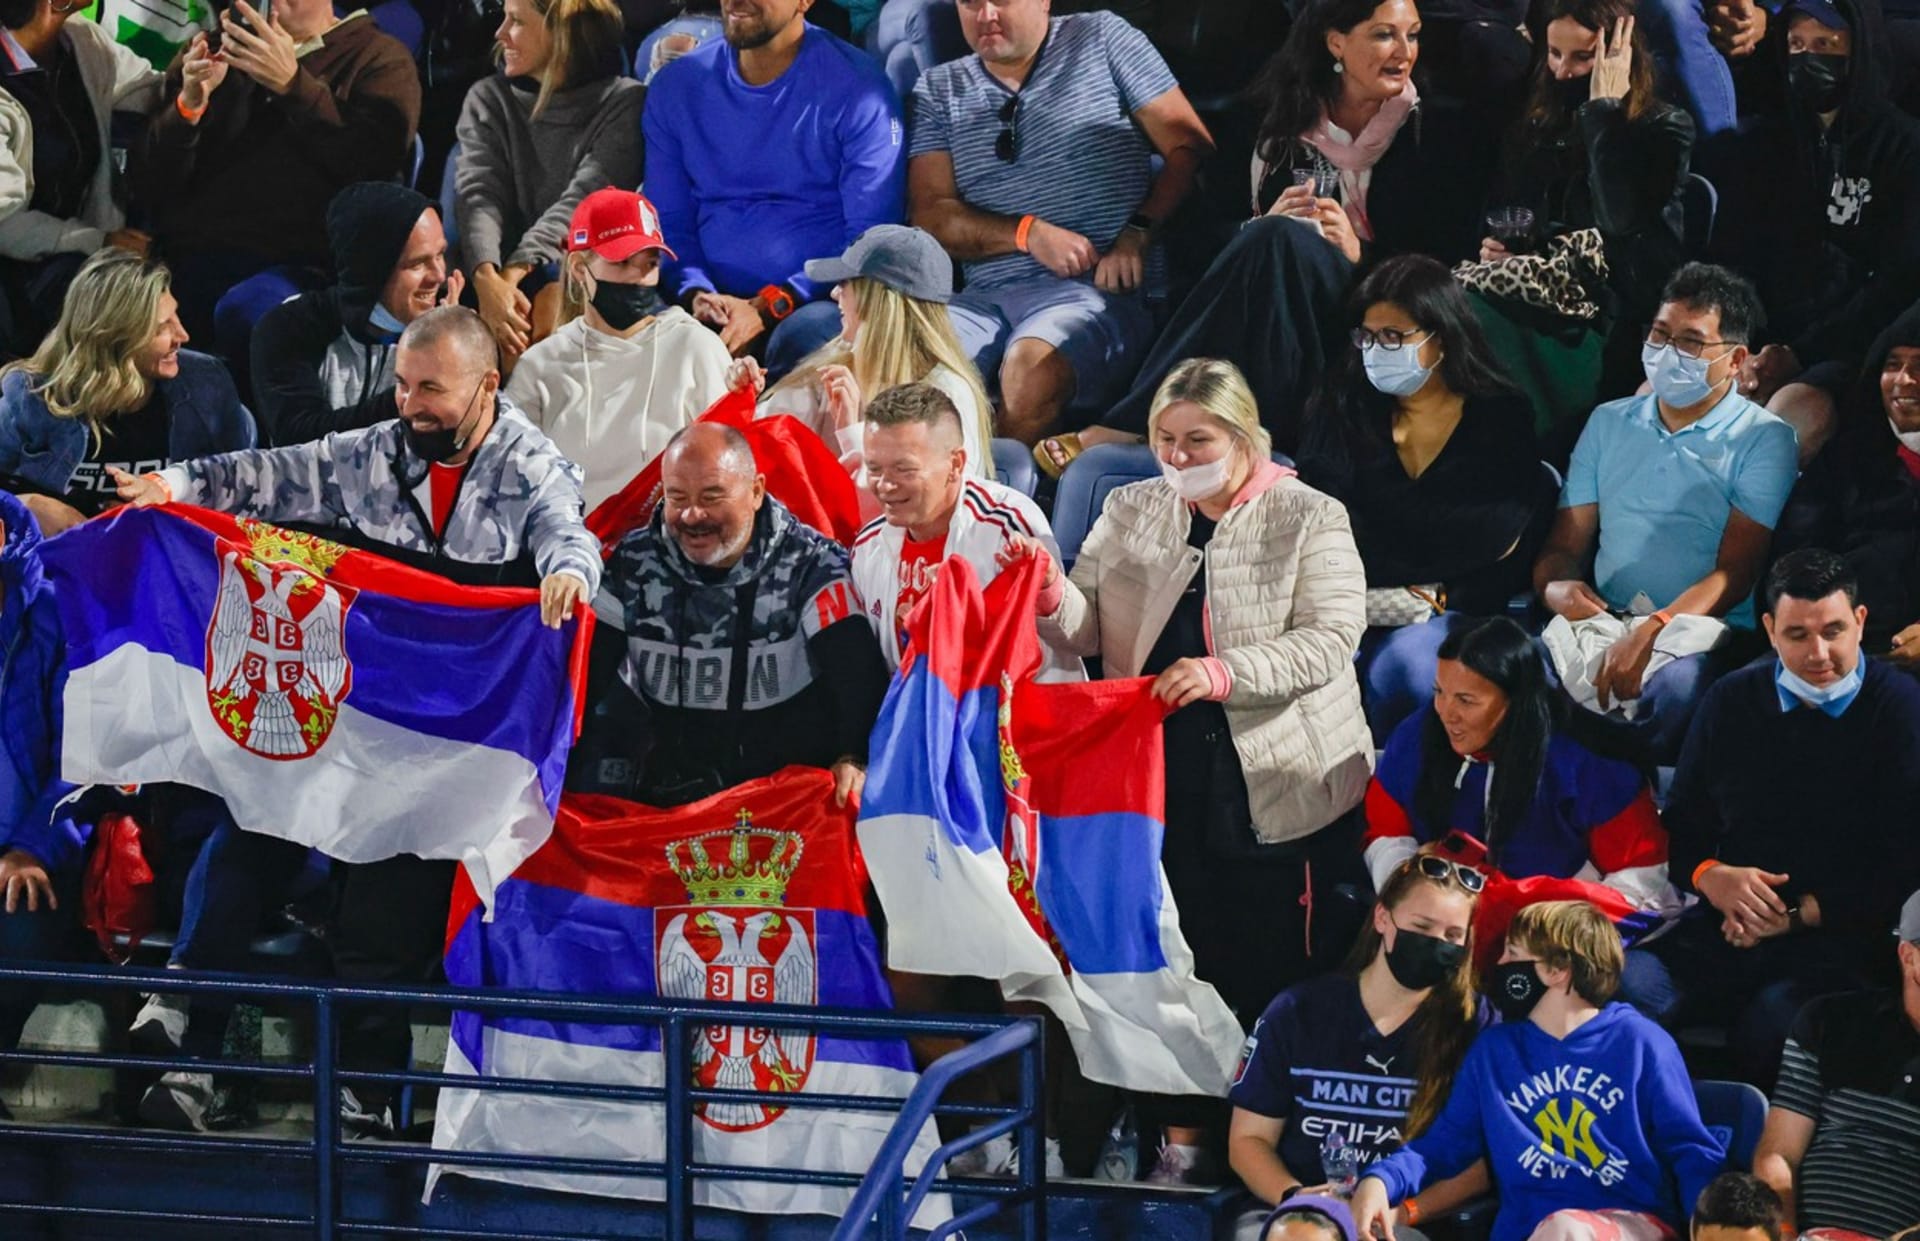 Srbští fanoušci byli při comebacku Novaka Djokoviče v Dubaji vidět i slyšet.